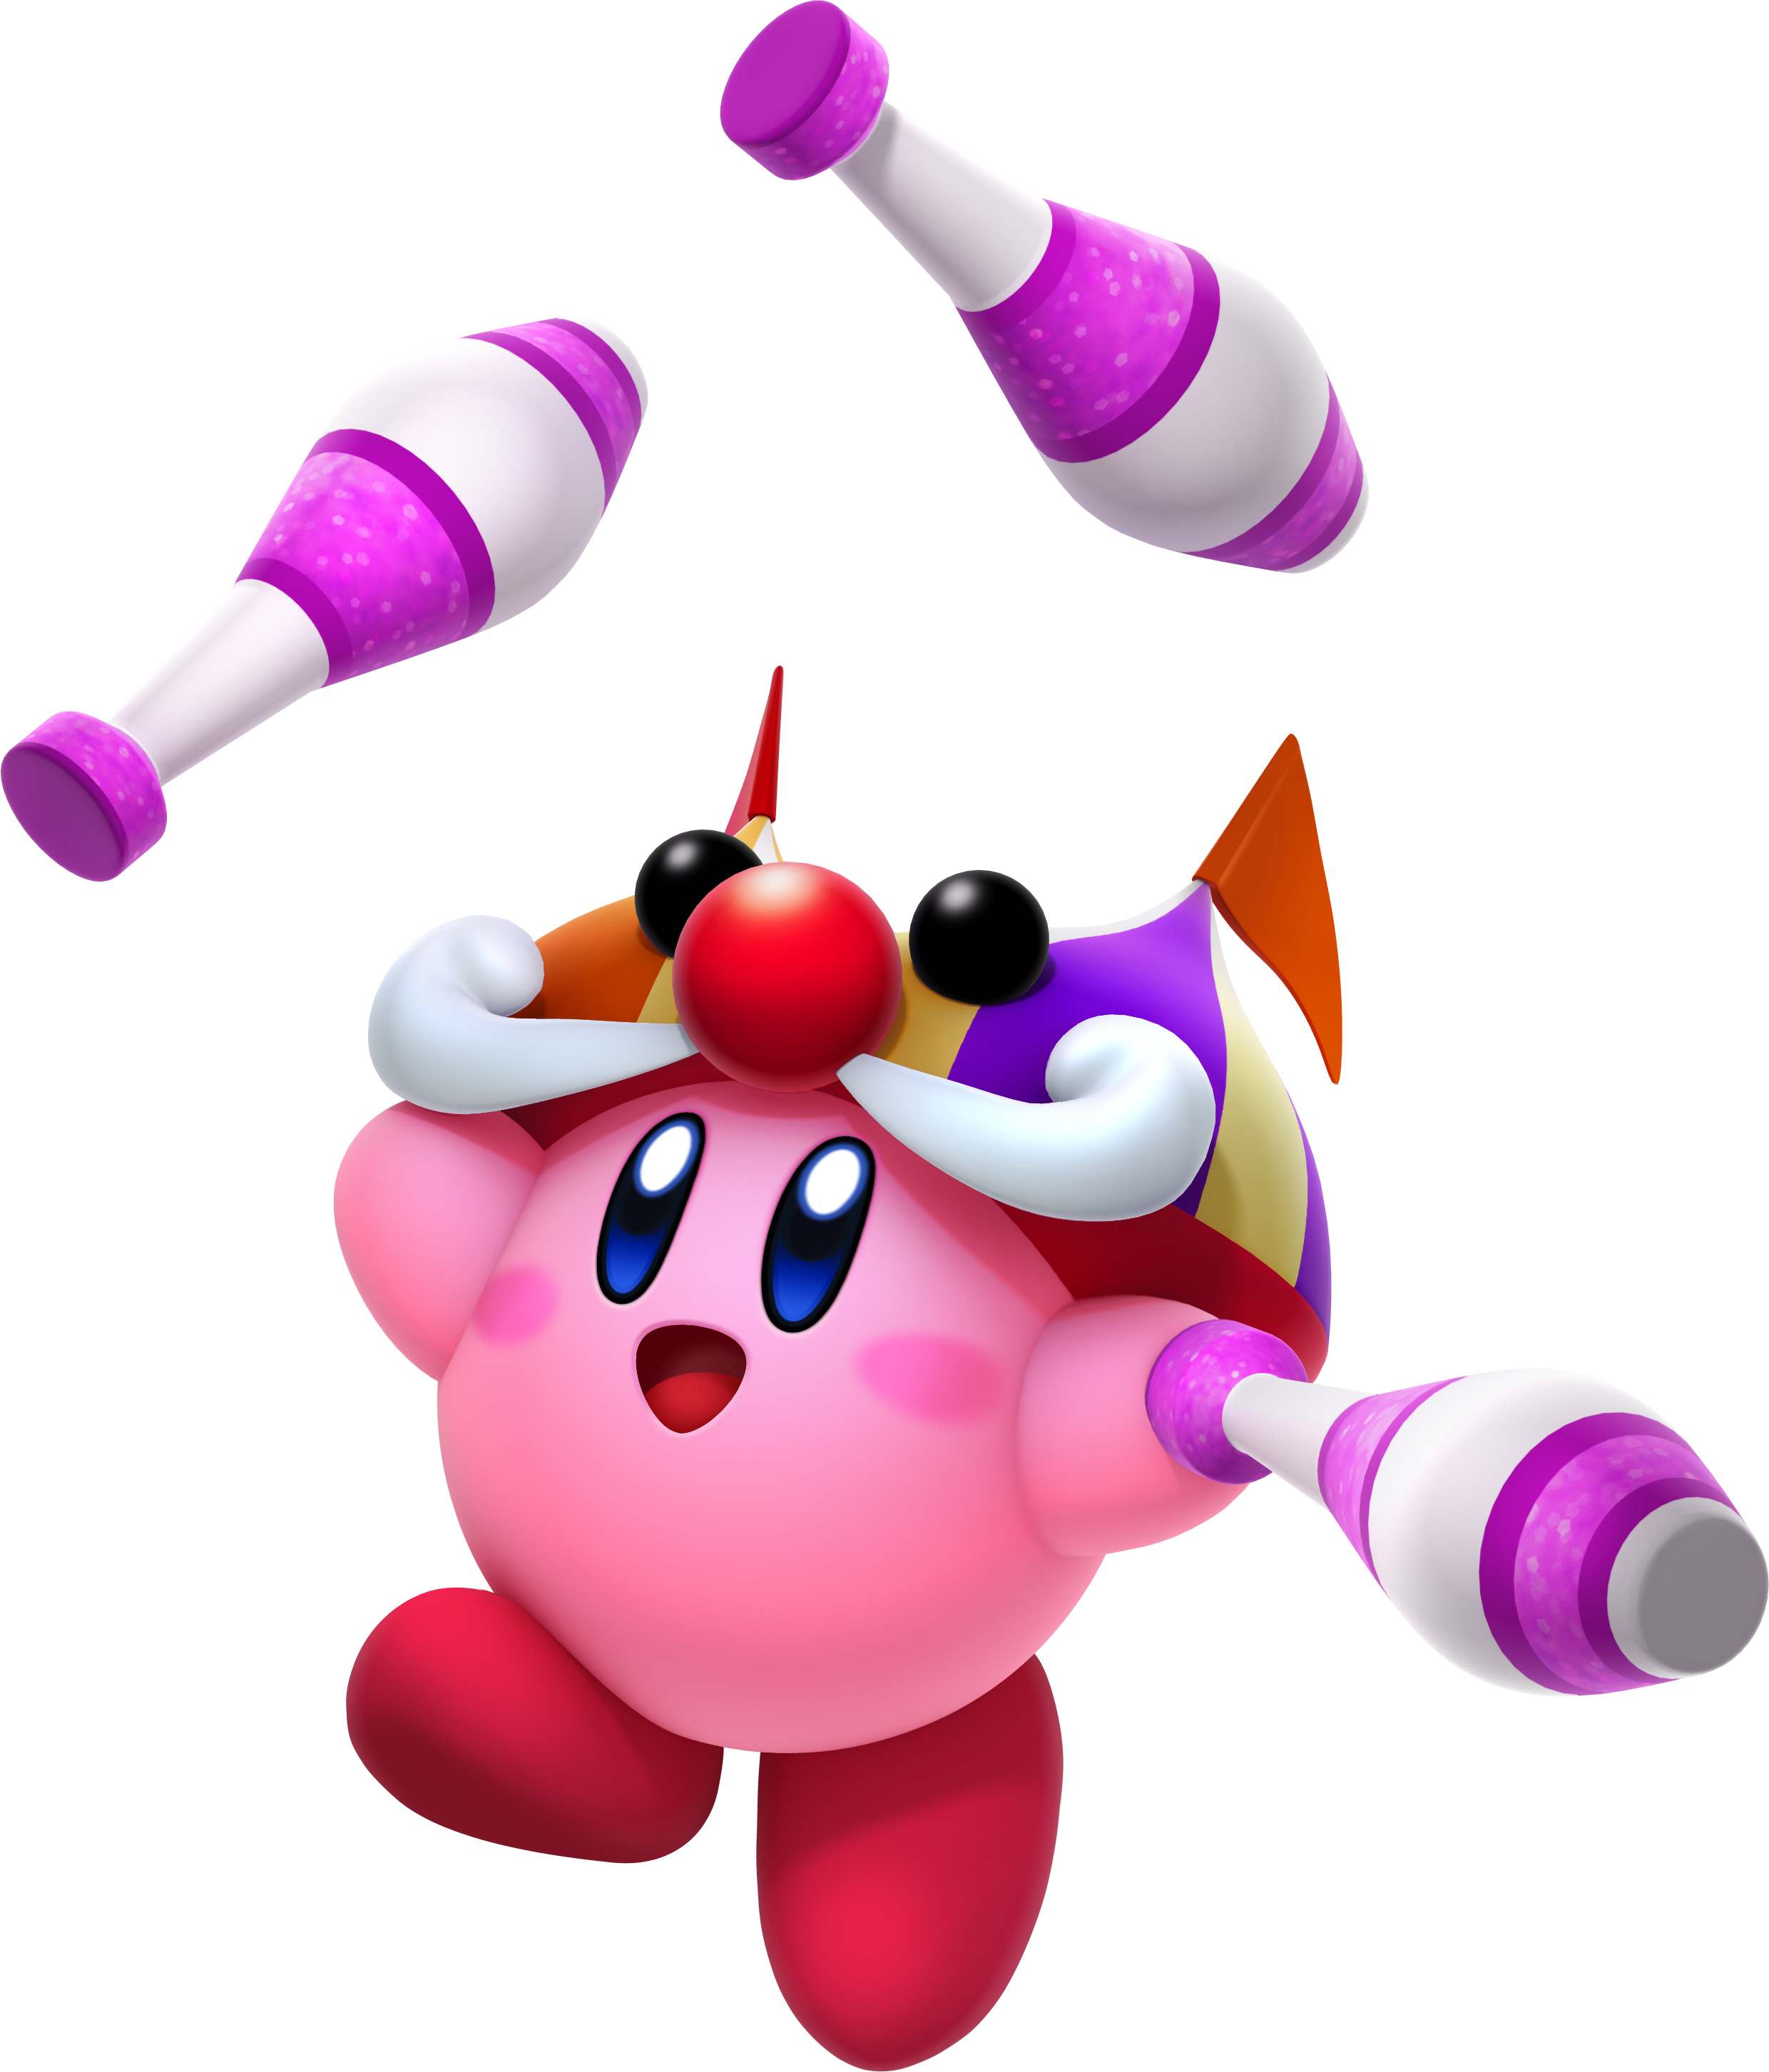 Kirby, Kirby Wiki